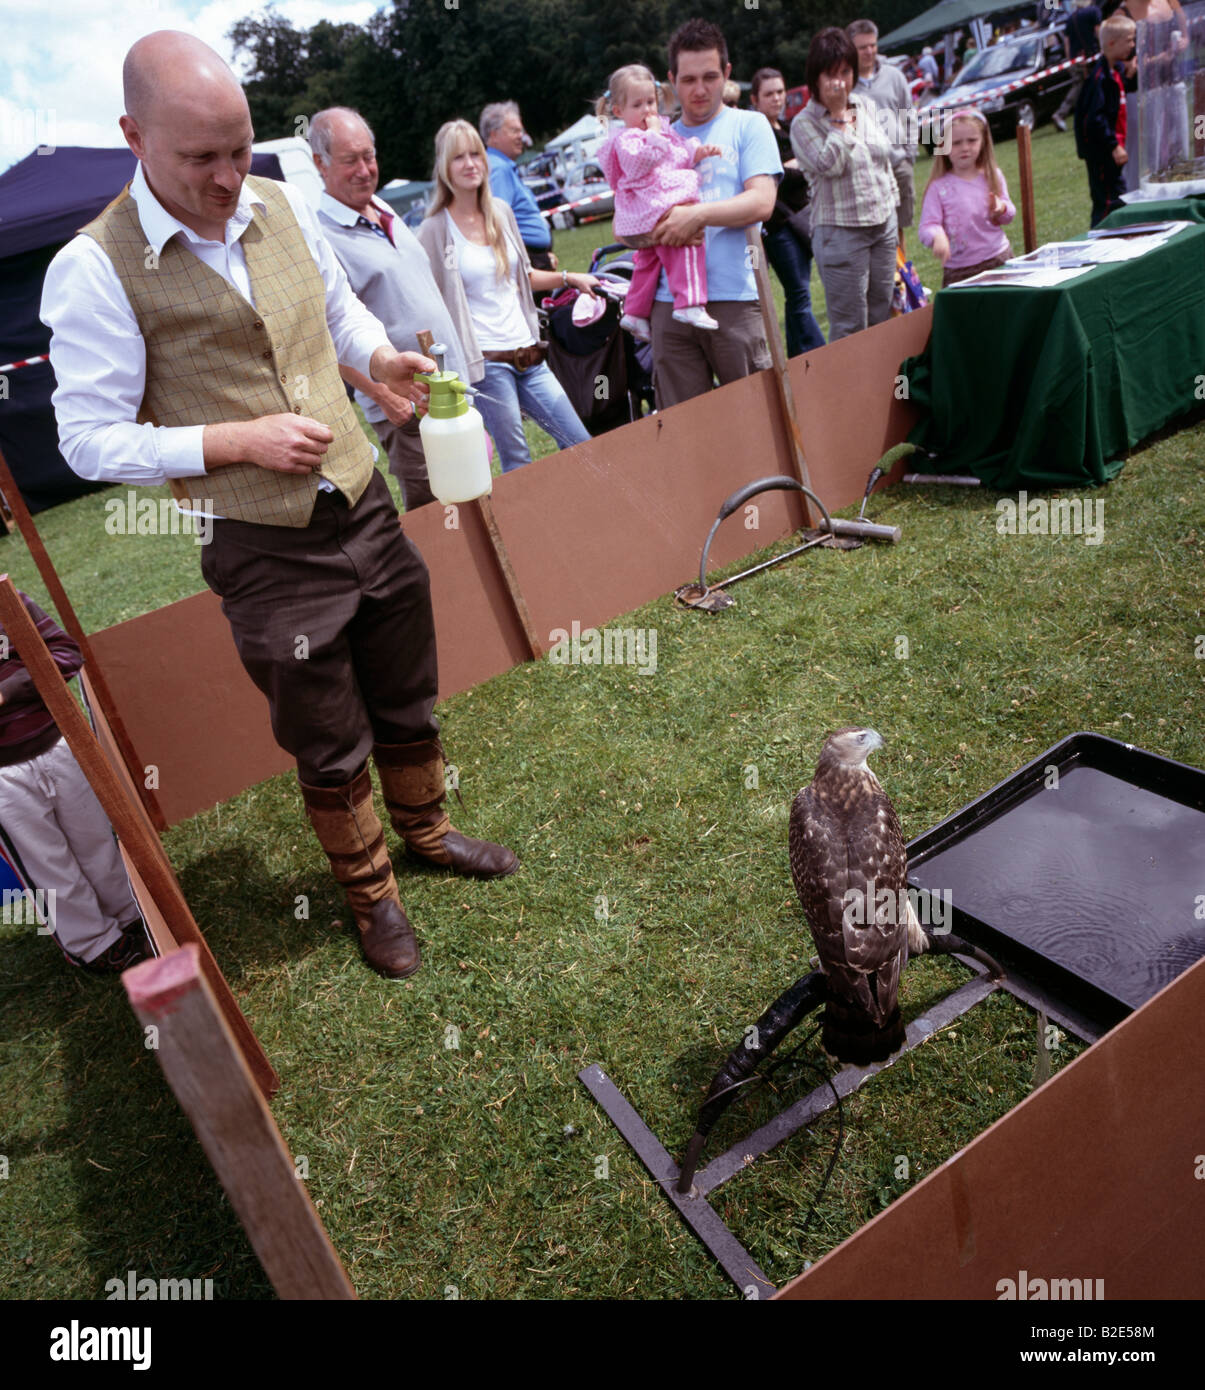 Un oiseau de proie s'est refroidie à l'eau d'un jet. Festival de Biggin Hill, Bromley, Kent, Angleterre, Royaume-Uni. Banque D'Images